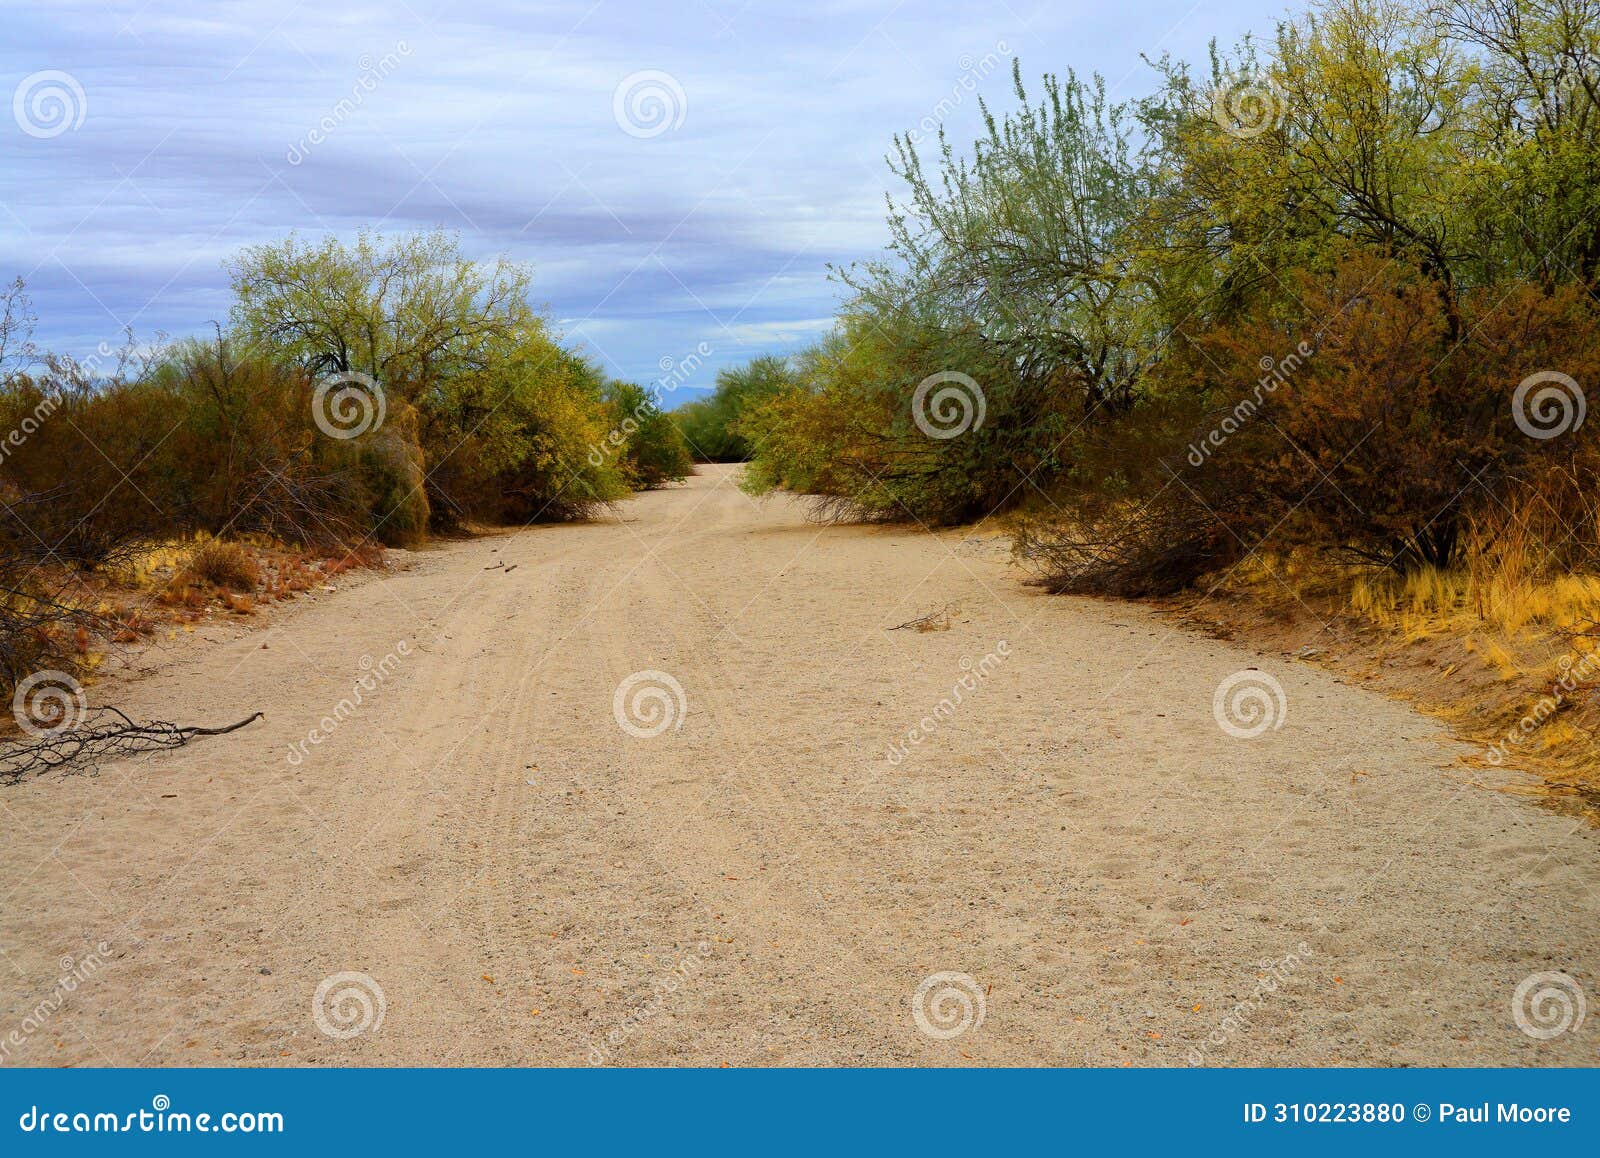 arizona desert arroyo